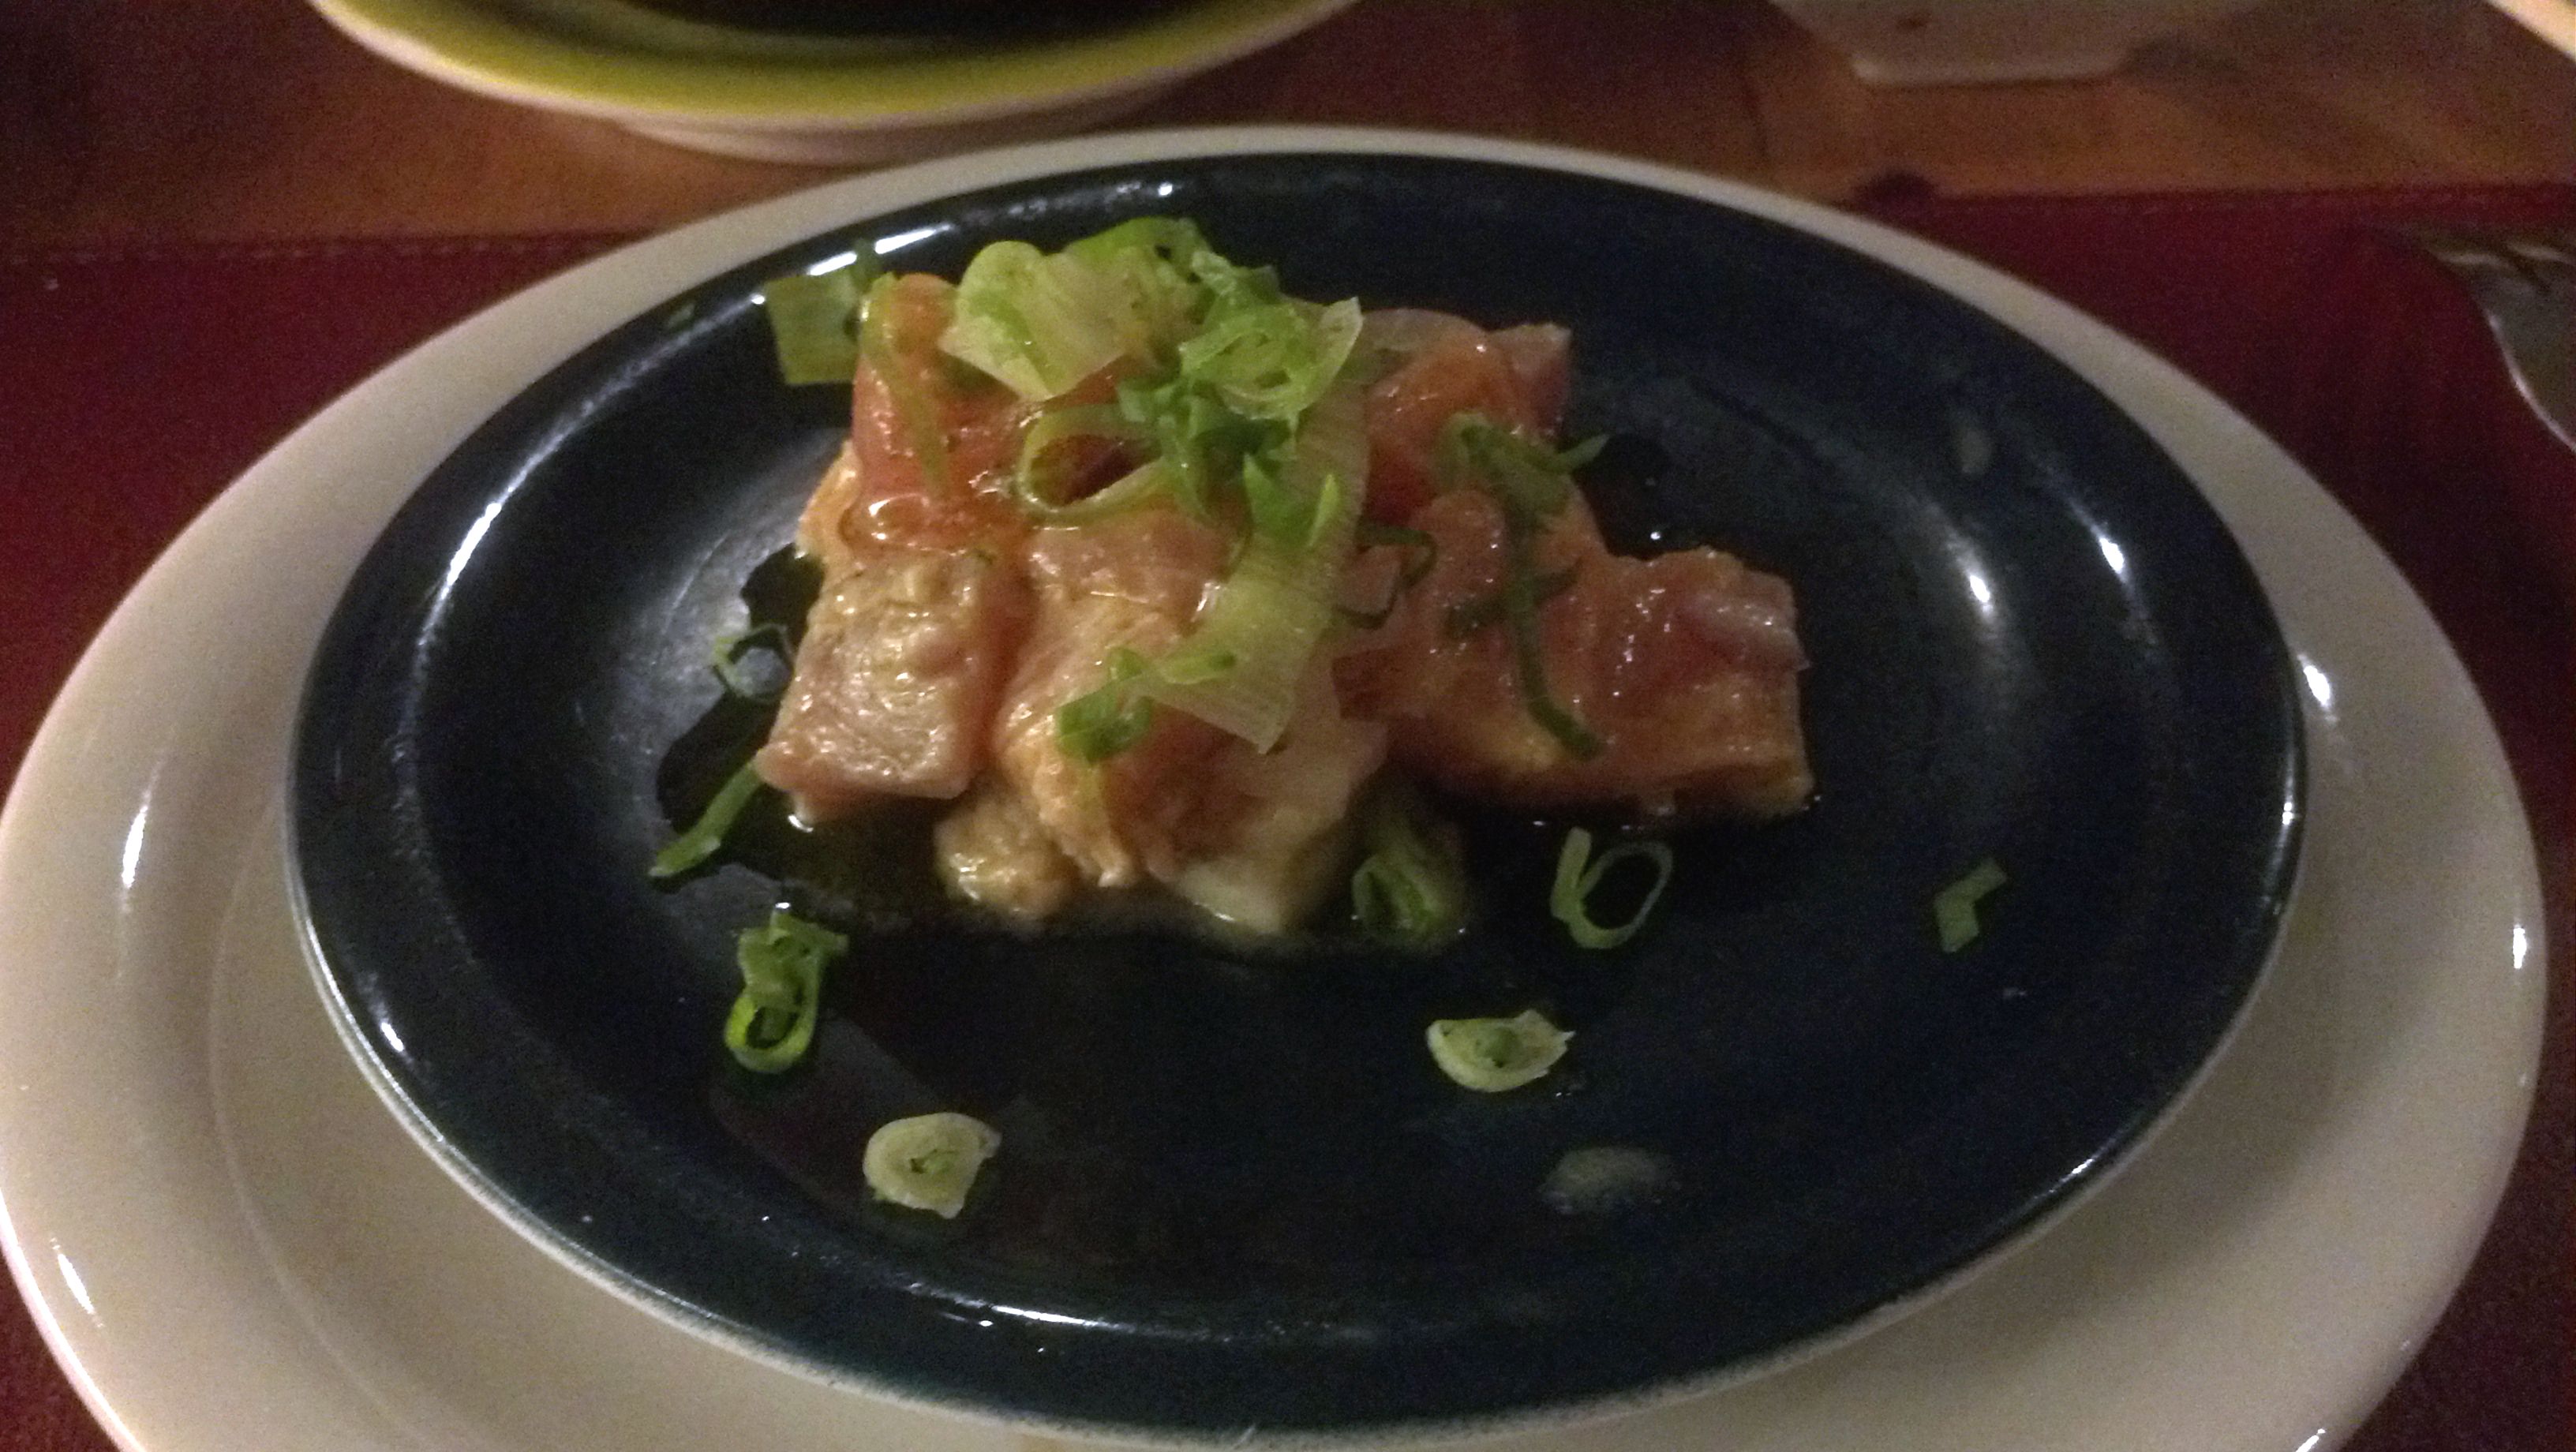 Soho Stera - Ceviche - Onde Comer em Salvador - Bares e restaurantes em Salvador -  Restaurantes japoneses em Salvador